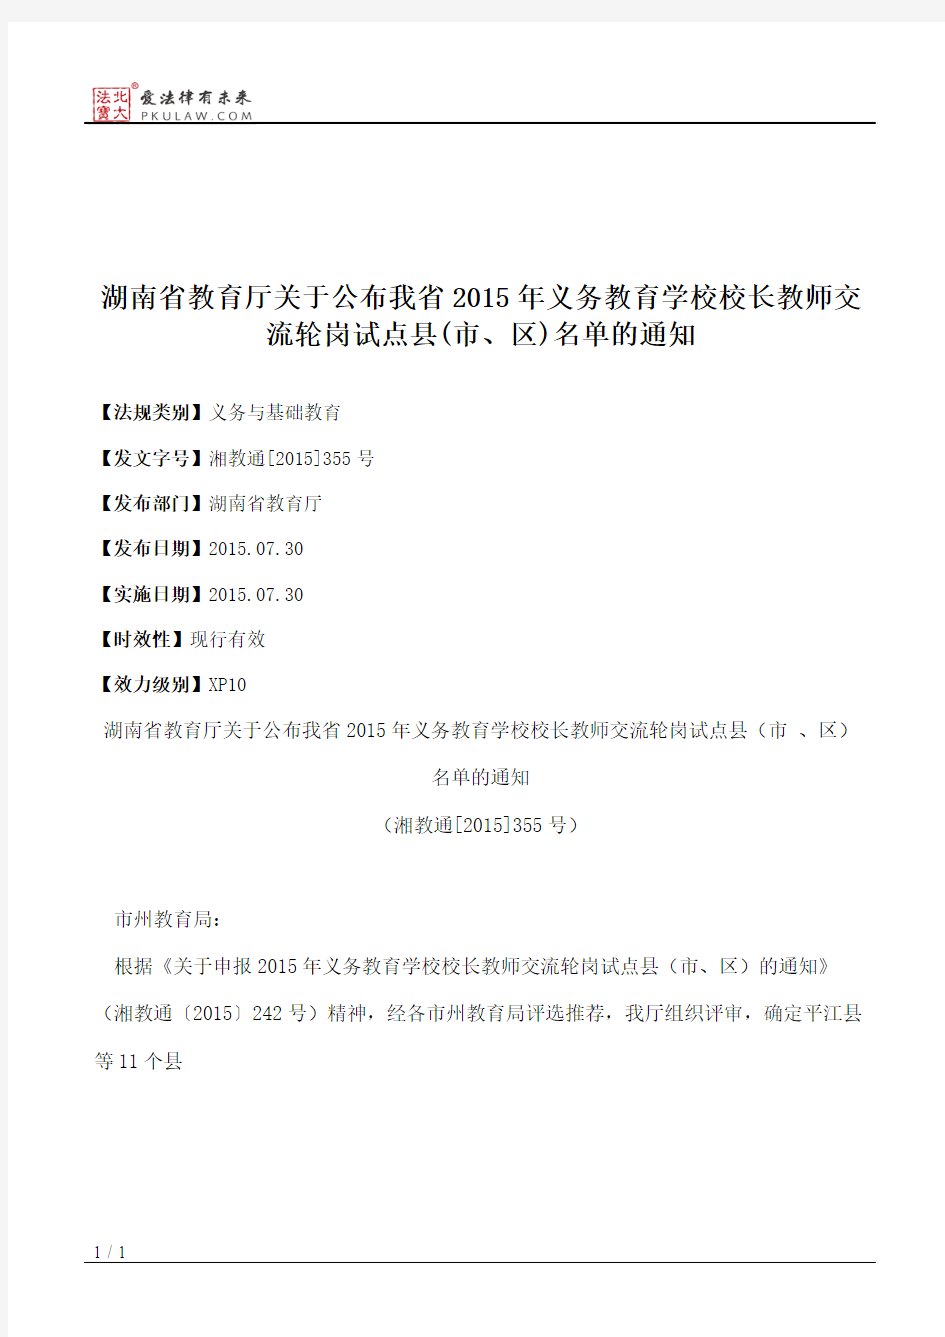 湖南省教育厅关于公布我省2015年义务教育学校校长教师交流轮岗试